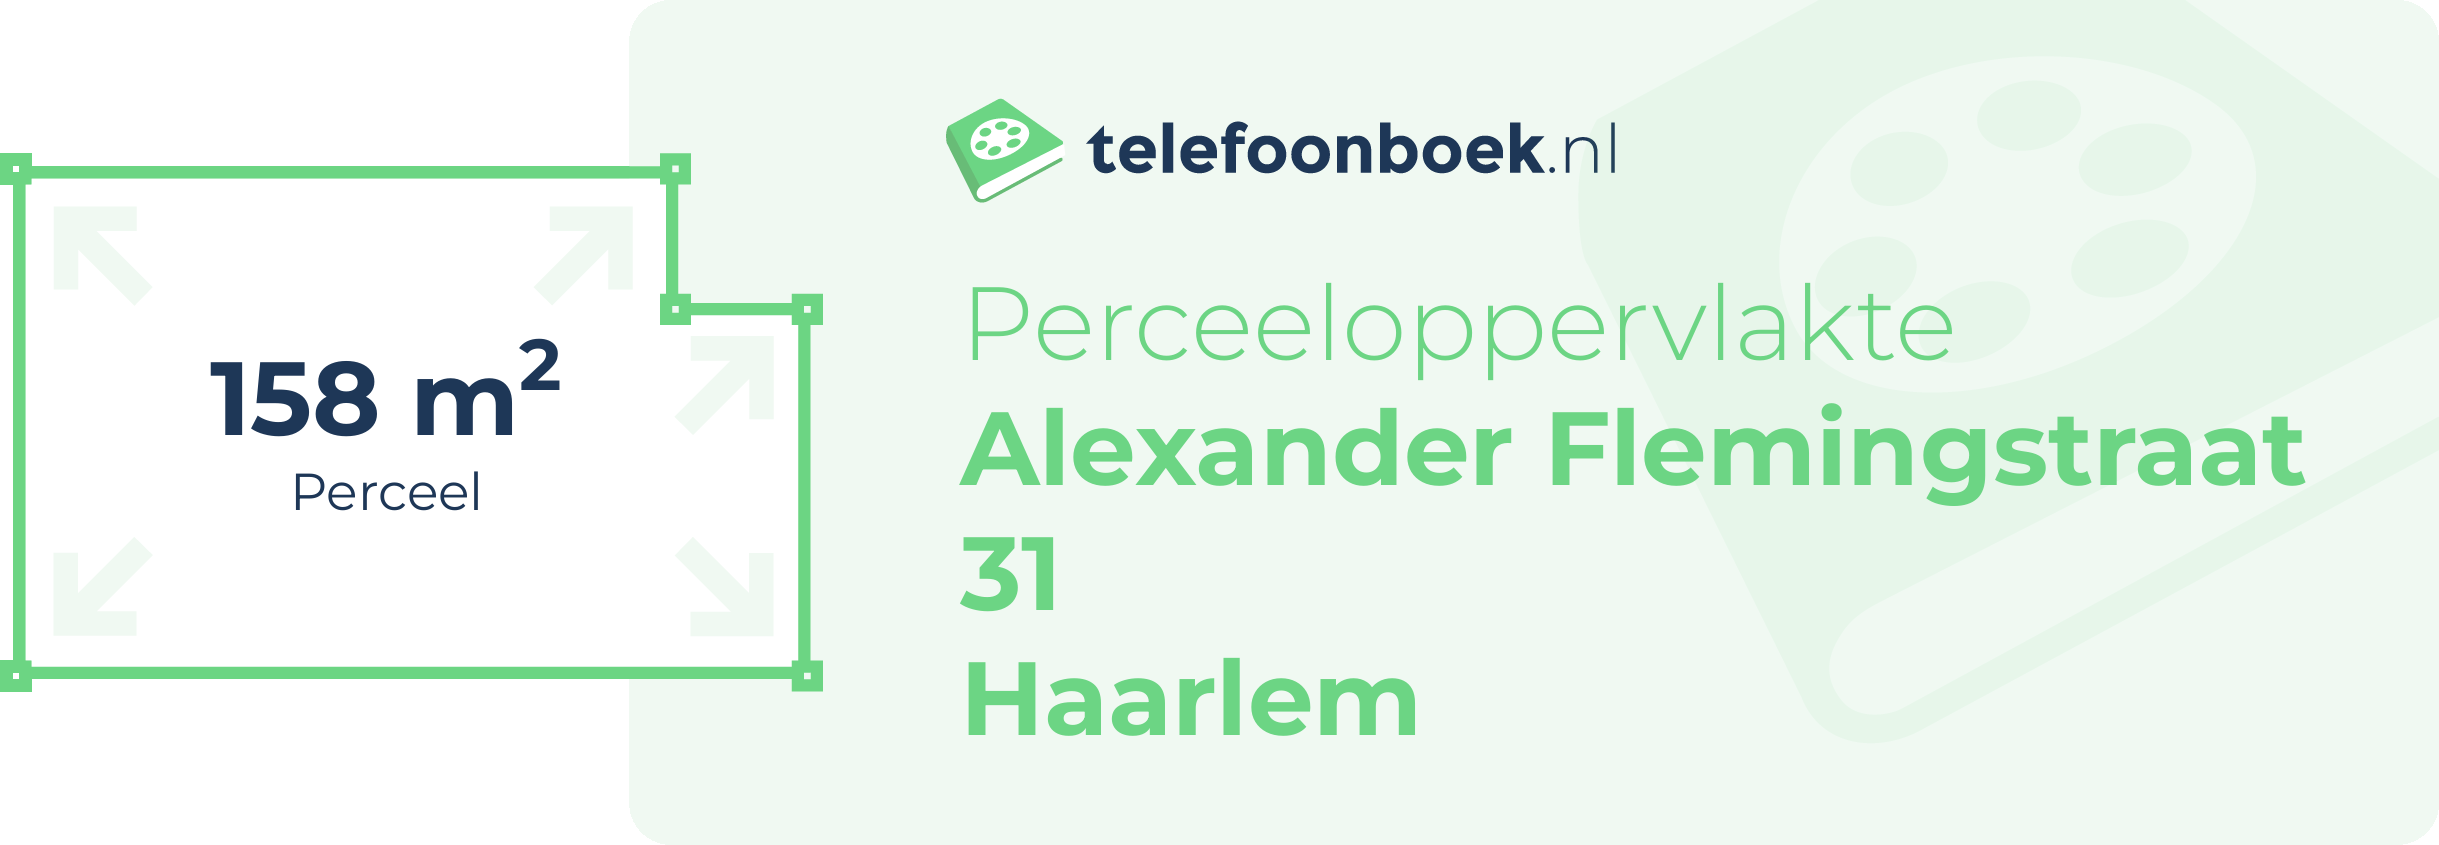 Perceeloppervlakte Alexander Flemingstraat 31 Haarlem